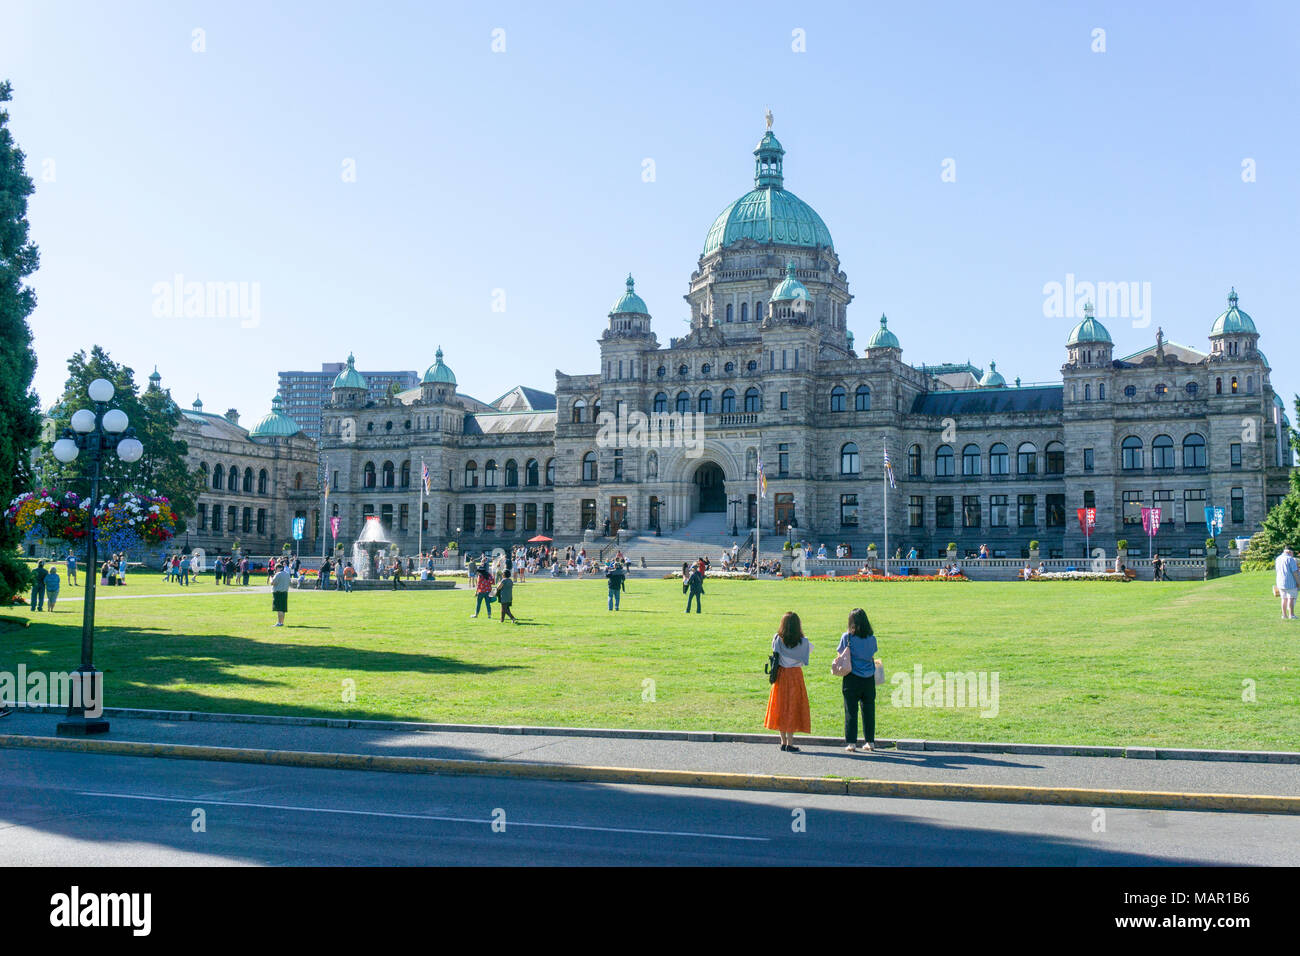 British Columbia Legislature Building, Victoria, British Columbia, Canada, North America Stock Photo